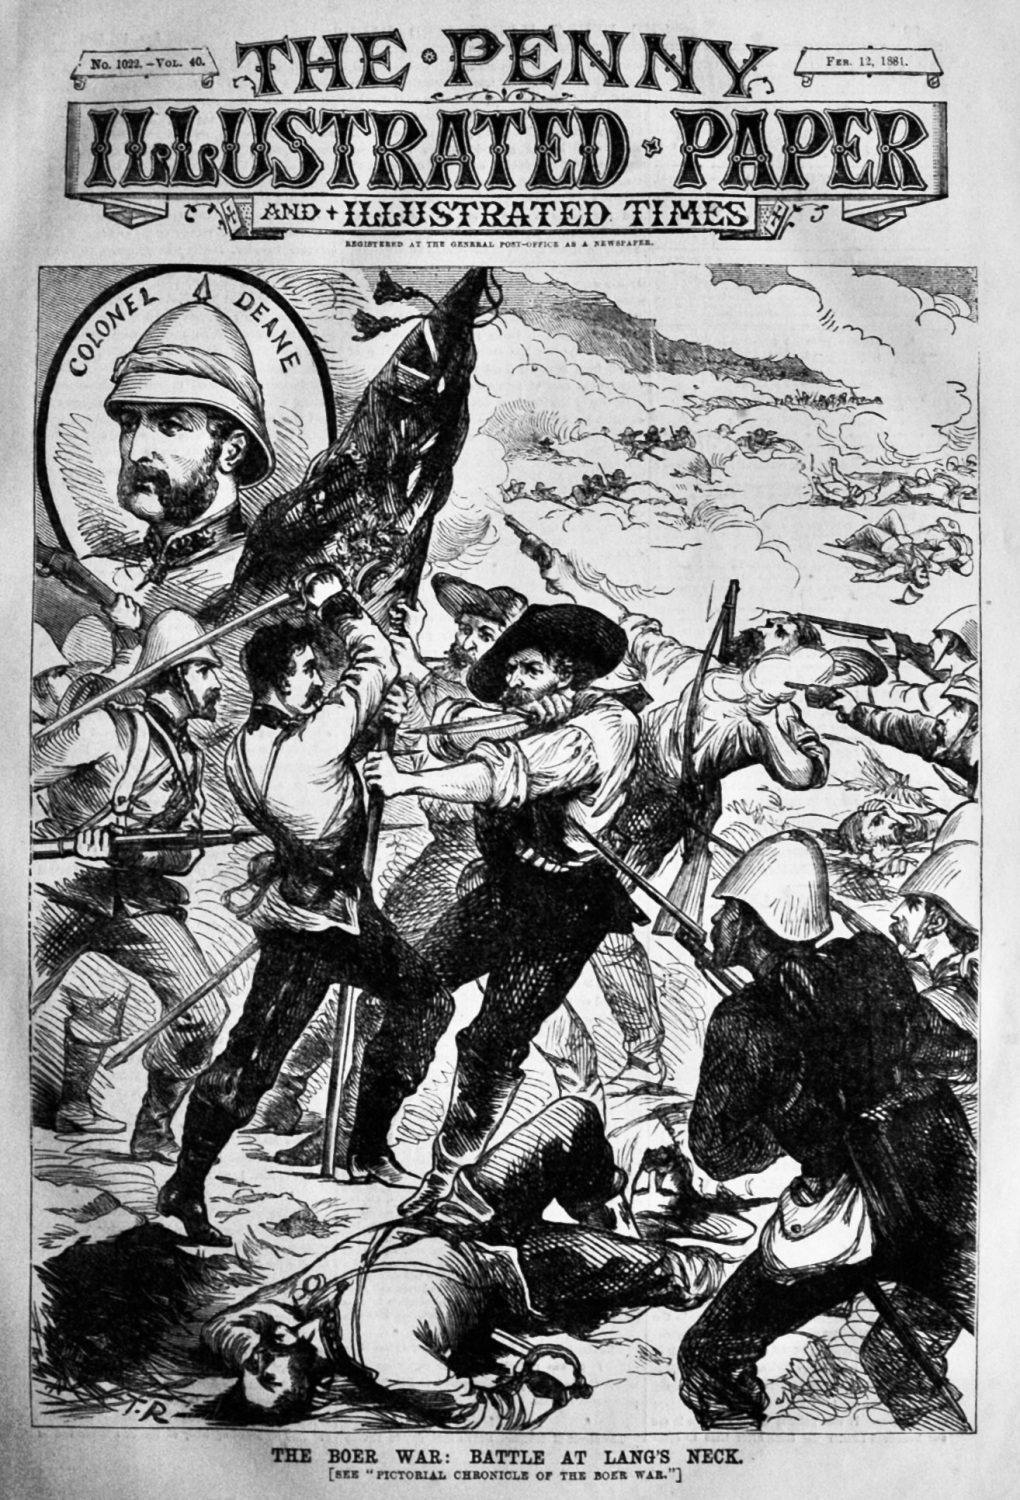 The Boer War :  Battle at Lang's Neck.  1881